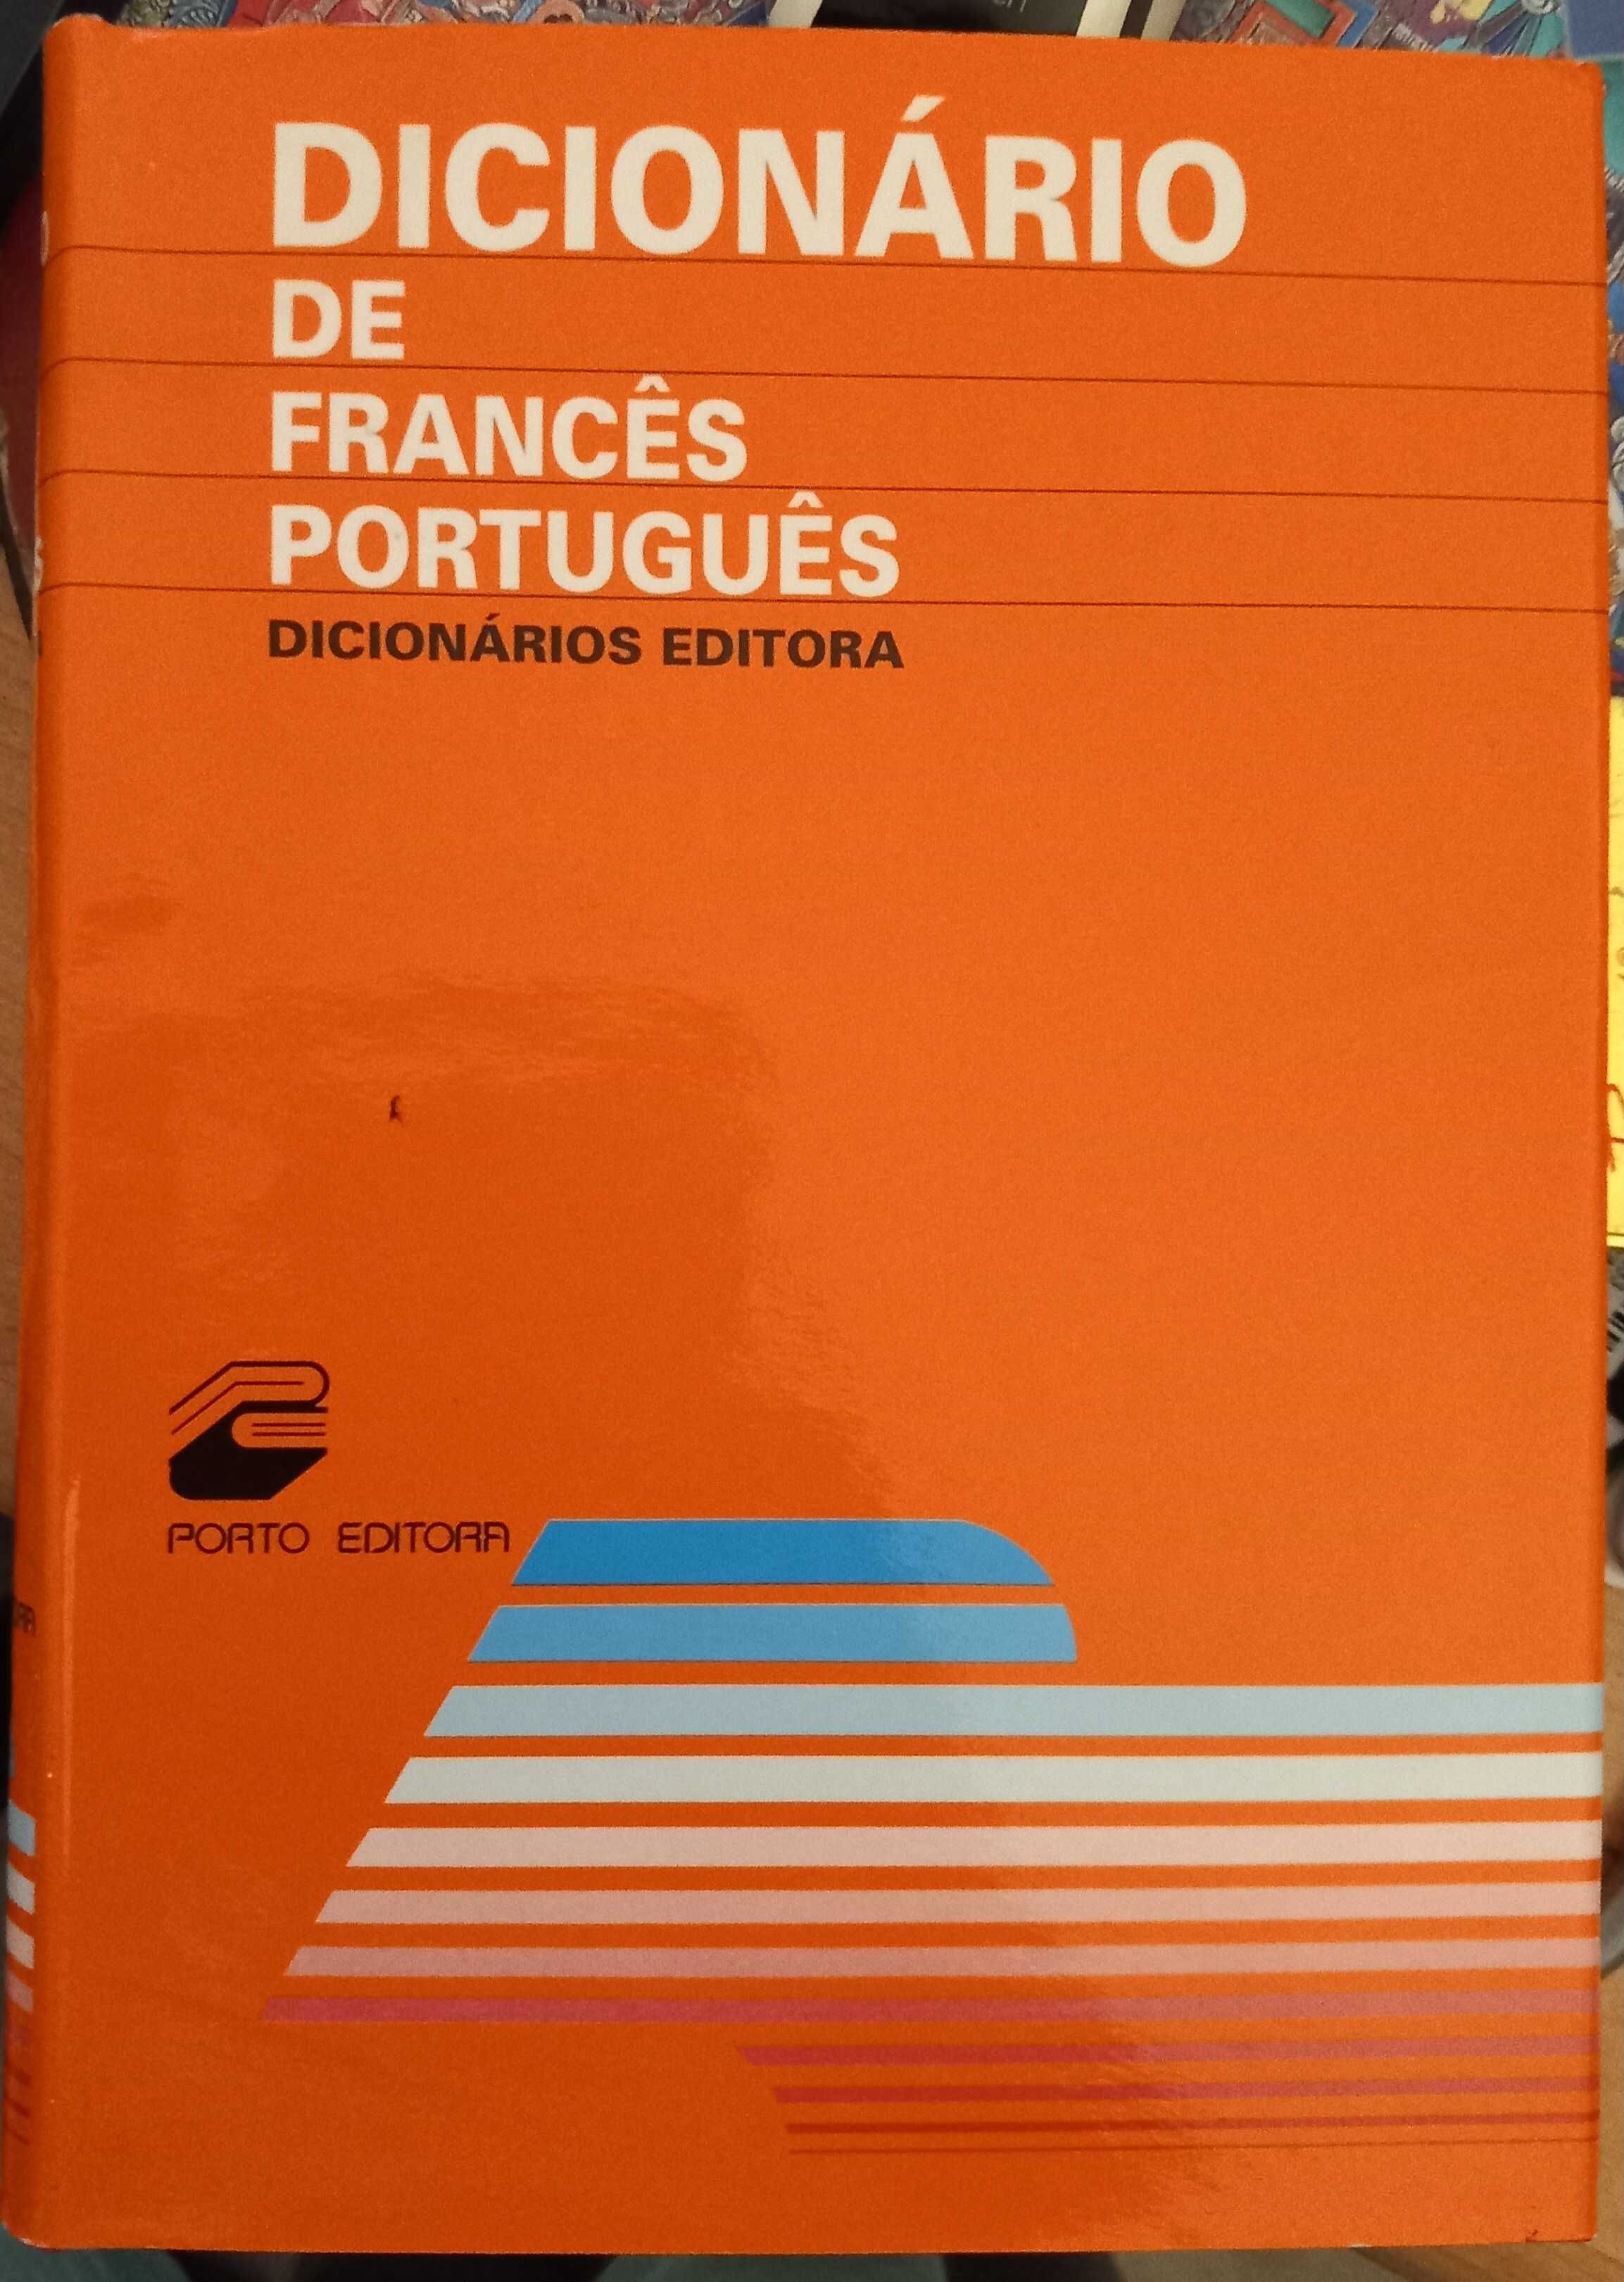 Dicionário Francês - Português - portes incluídos